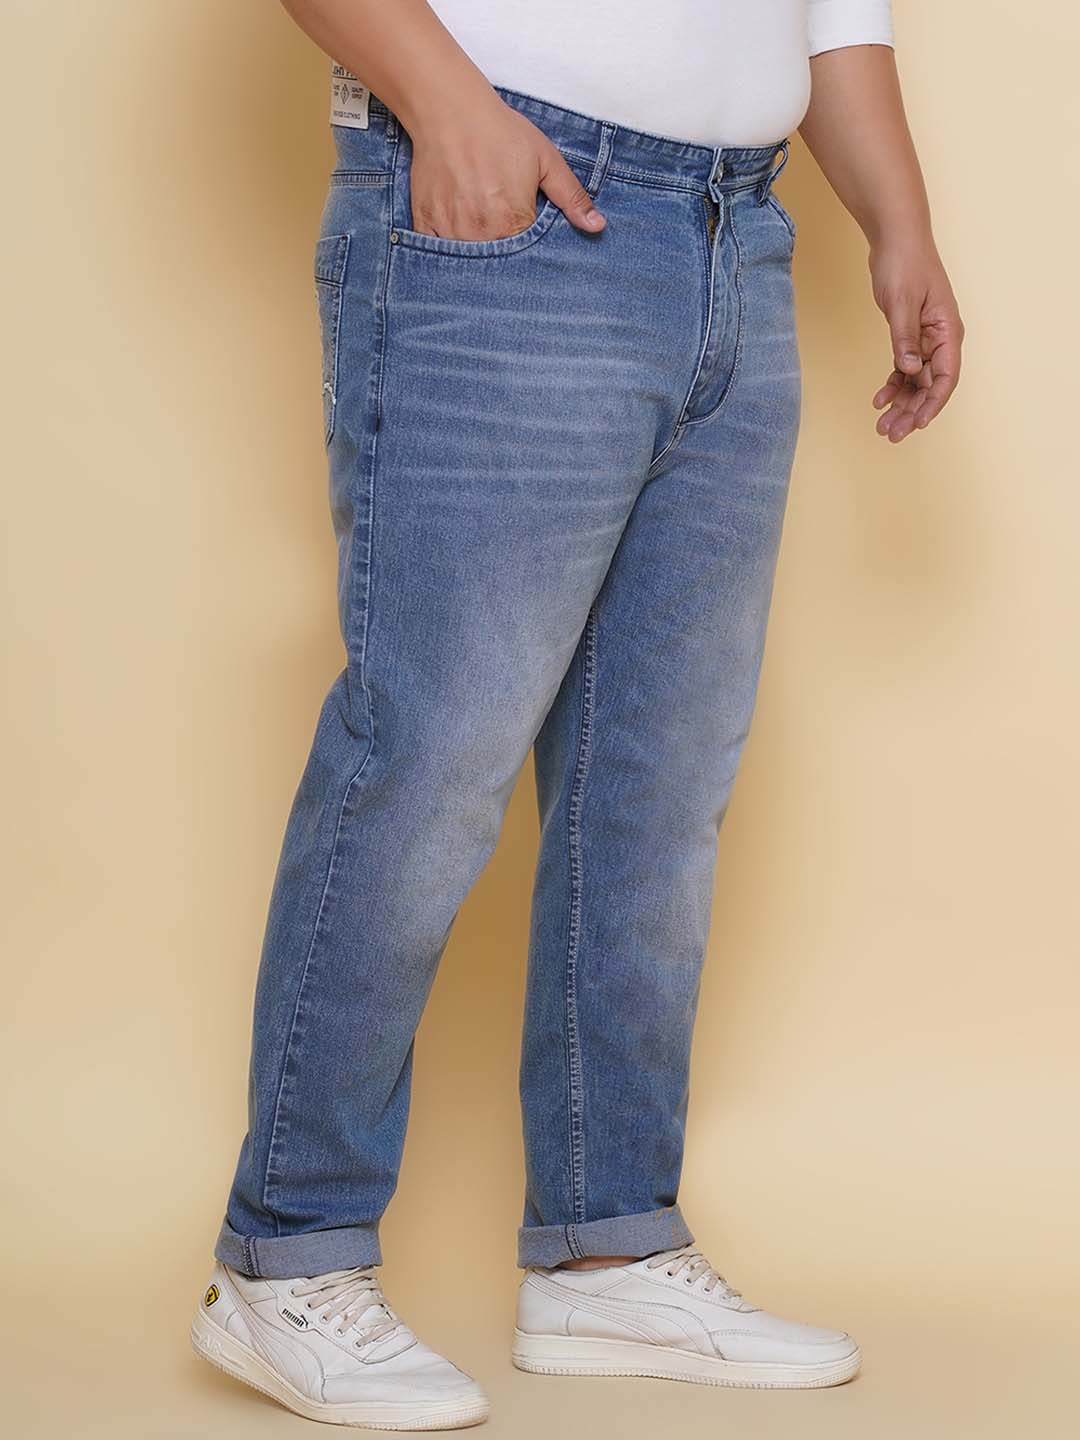 bottomwear/jeans/EJPJ25134/ejpj25134-3.jpg